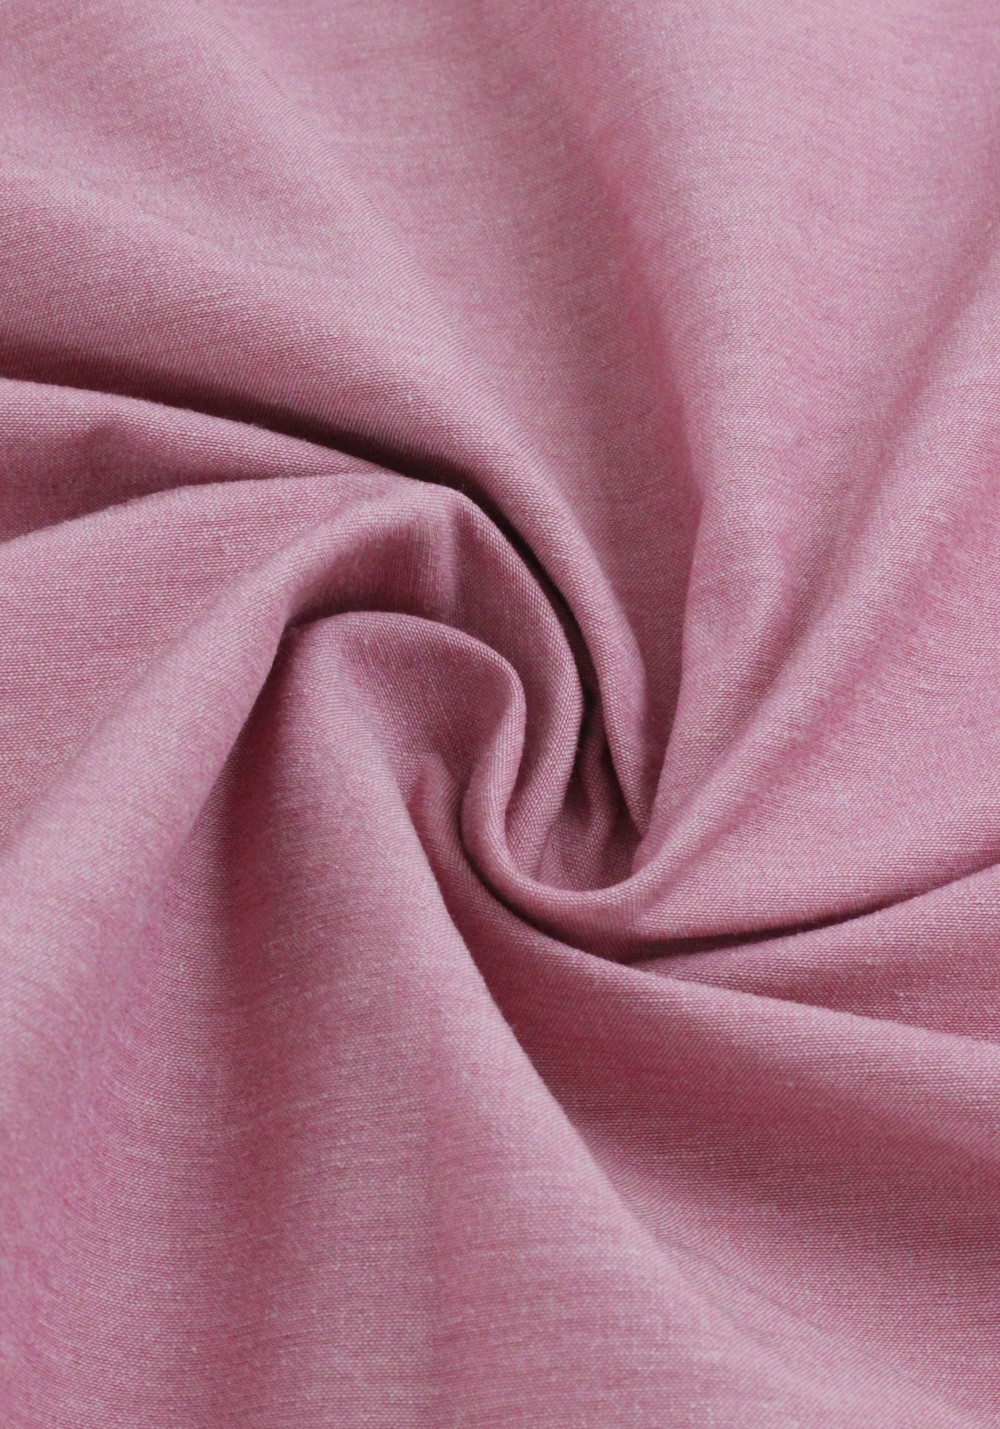 Tissu seconde main - Coton stretch rose pâle